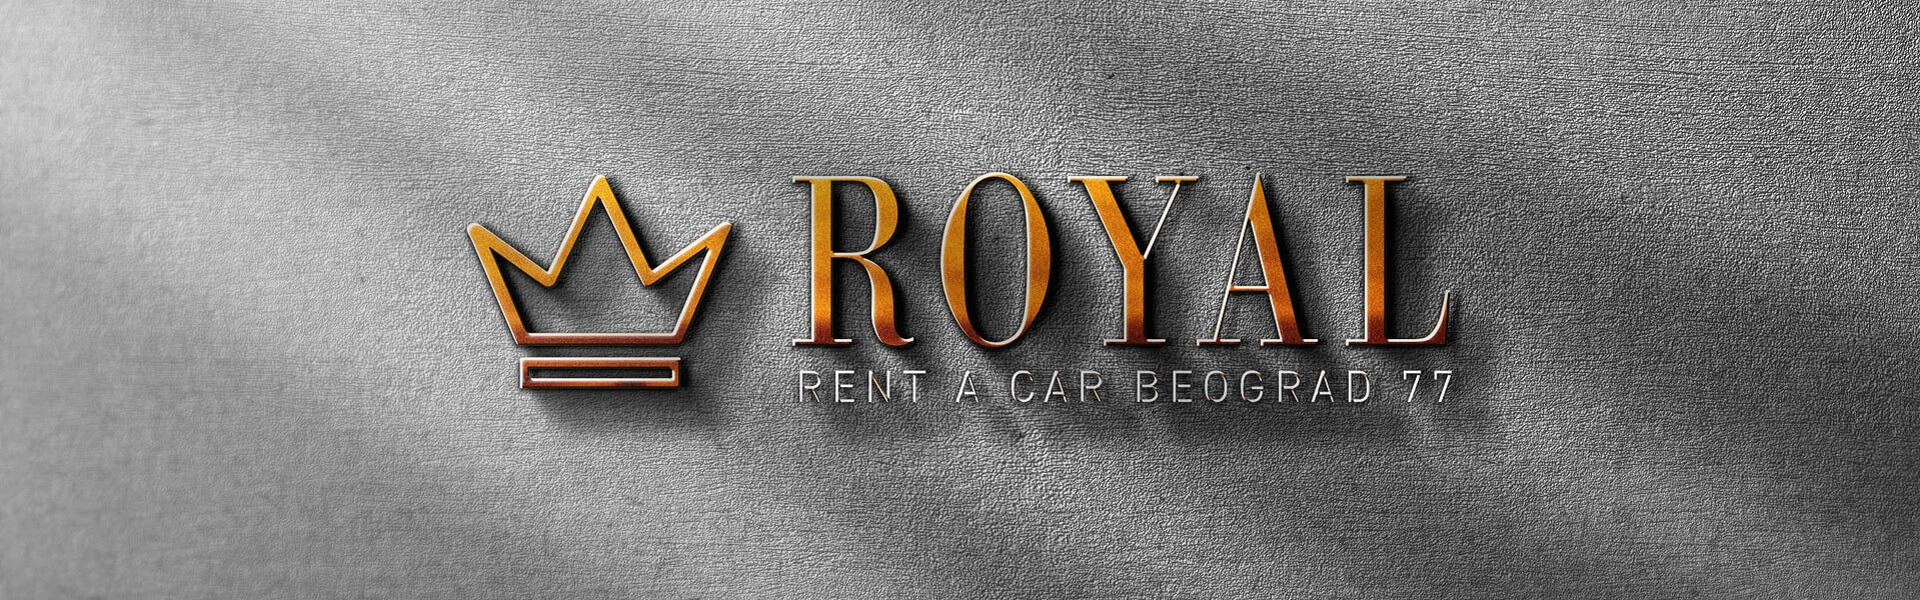 Sprej za grlo | Rent a car Beograd Royal